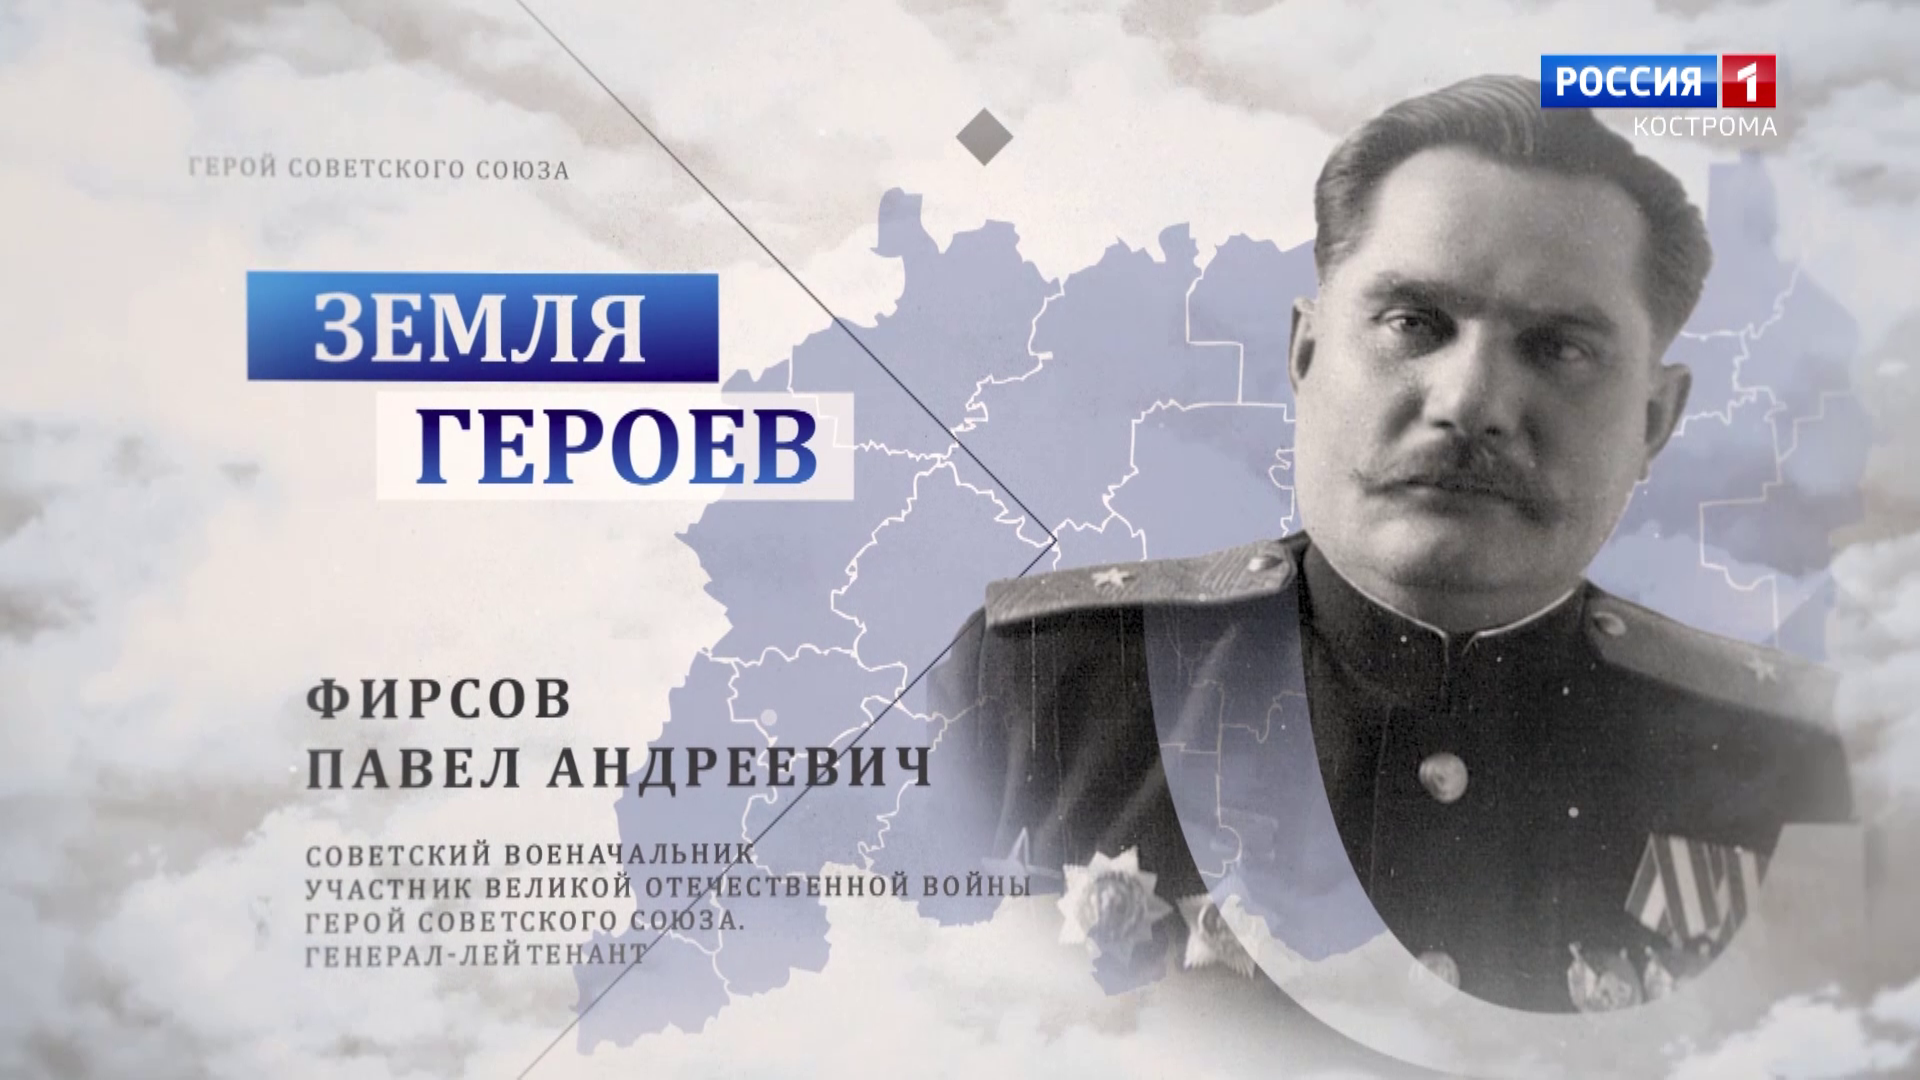 Земля героев: генерал-лейтенант Павел Фирсов